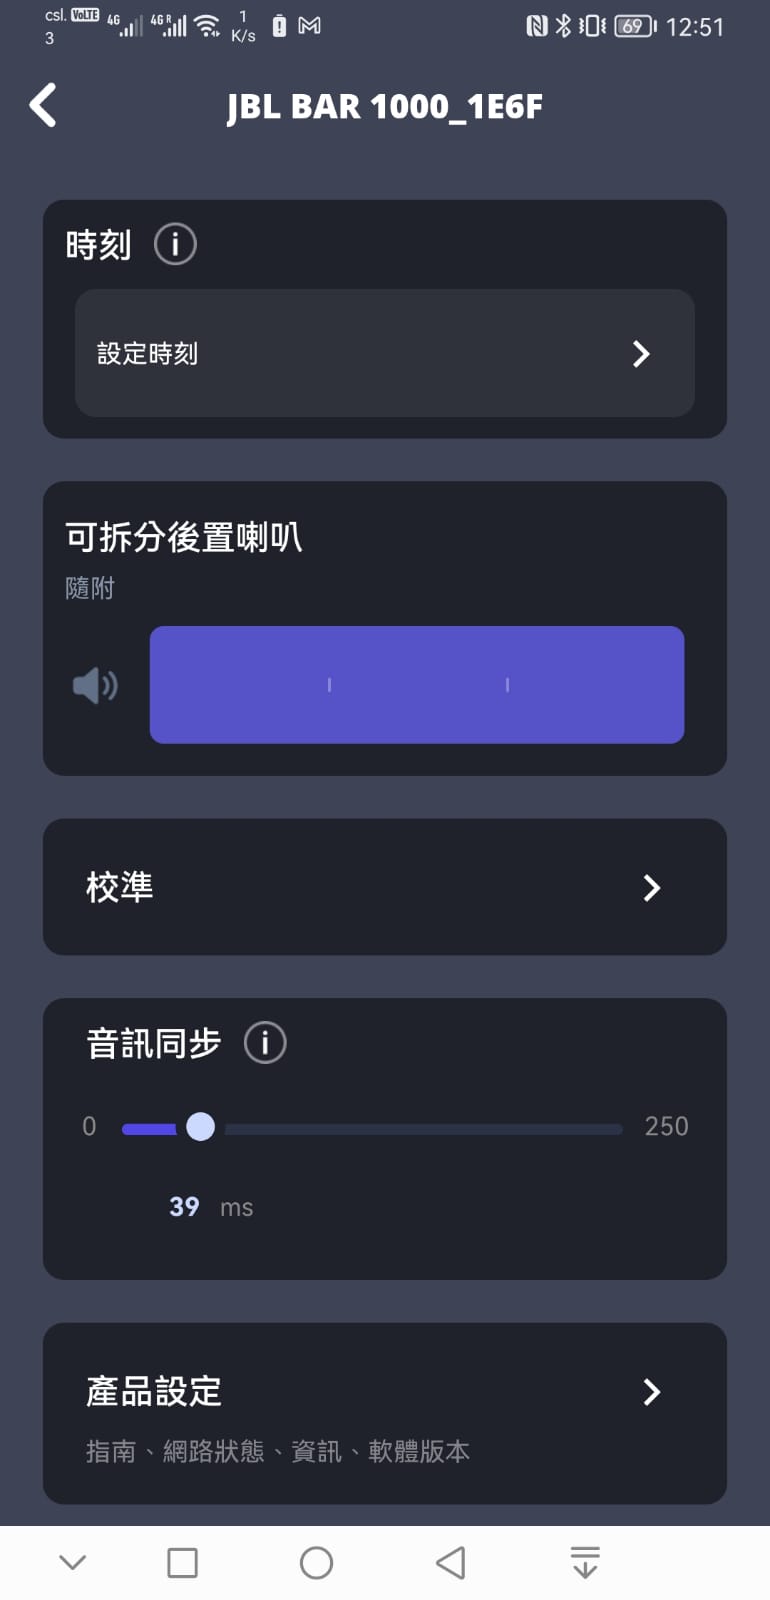 JBL 近年推出的 Soundbar 系列選擇相當豐富，加上音效表現出色，一直好受用家歡迎。而左右兩邊可分體式的設計，讓環繞聲效玩法更加靈活，可以提供更完整的包圍感效果。今次最新推出的高階 Bar 1000 Soundbar 更配搭了 JBL One App，支援自動音效校正，可以因應不同的使用環境和擺位，獲得最佳的 3D 環繞聲效體驗，今次就同大家分享一下校正流程以及各項音效、音樂相關設定。